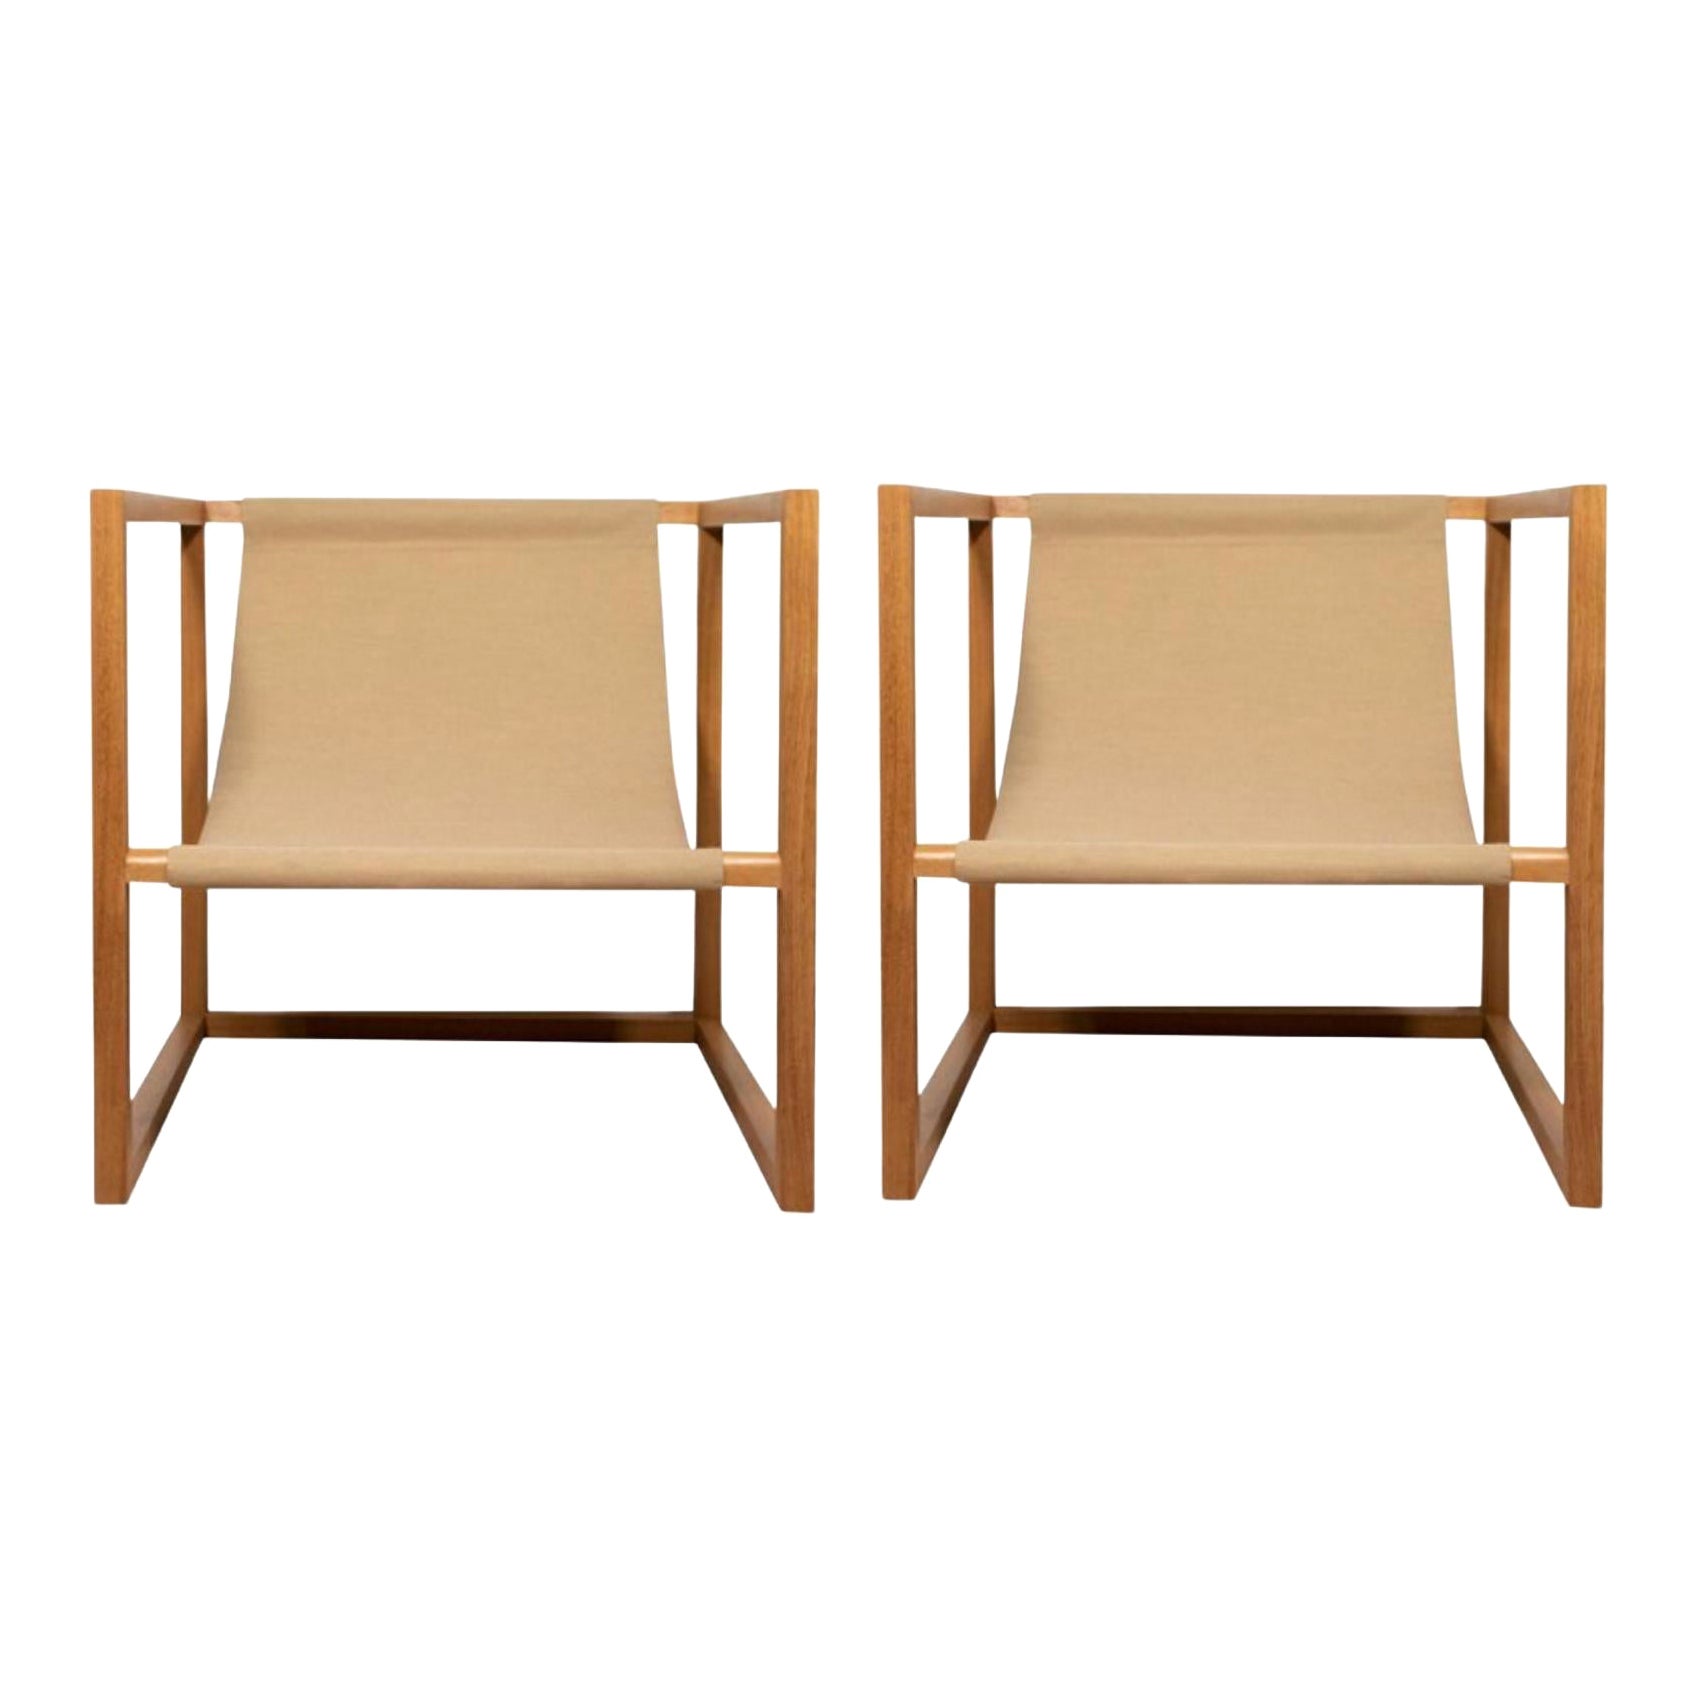 Ensemble de 2 fauteuils cubiques uniques signés par Gigi Design